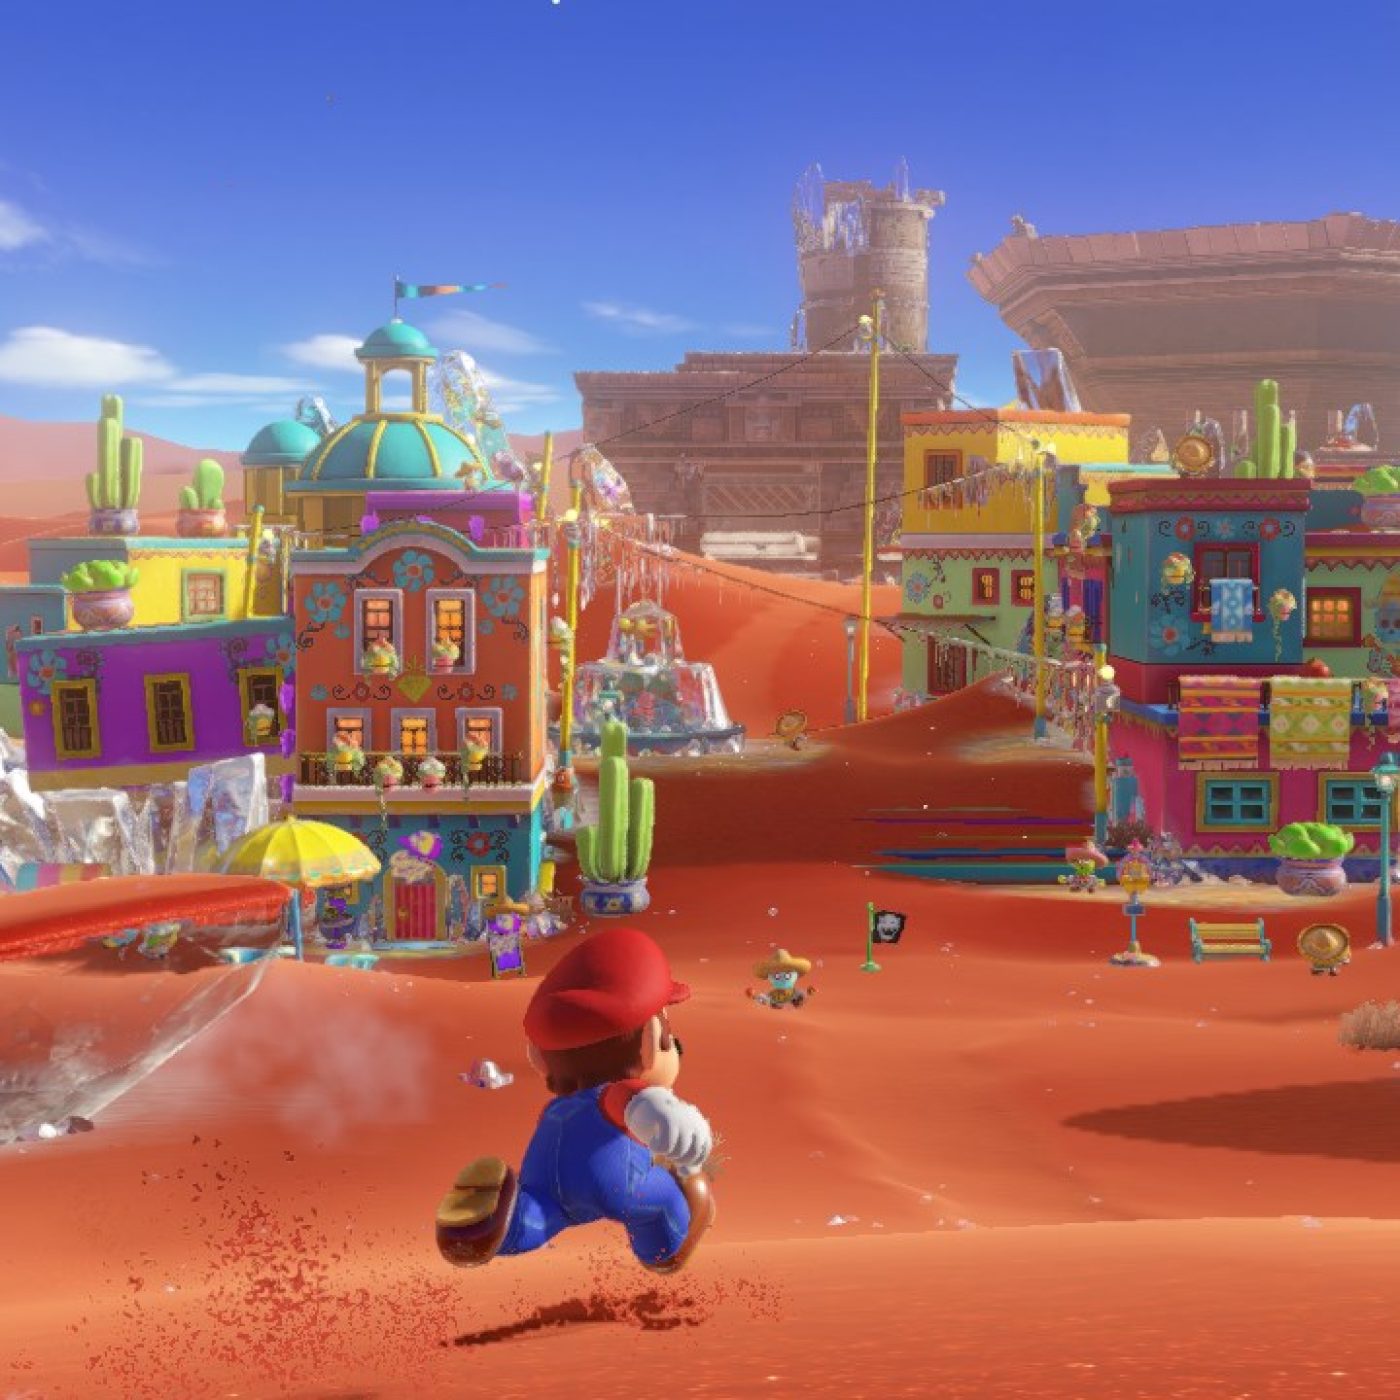 E3 2017: Super Mario Odyssey makes a positive, wacky first